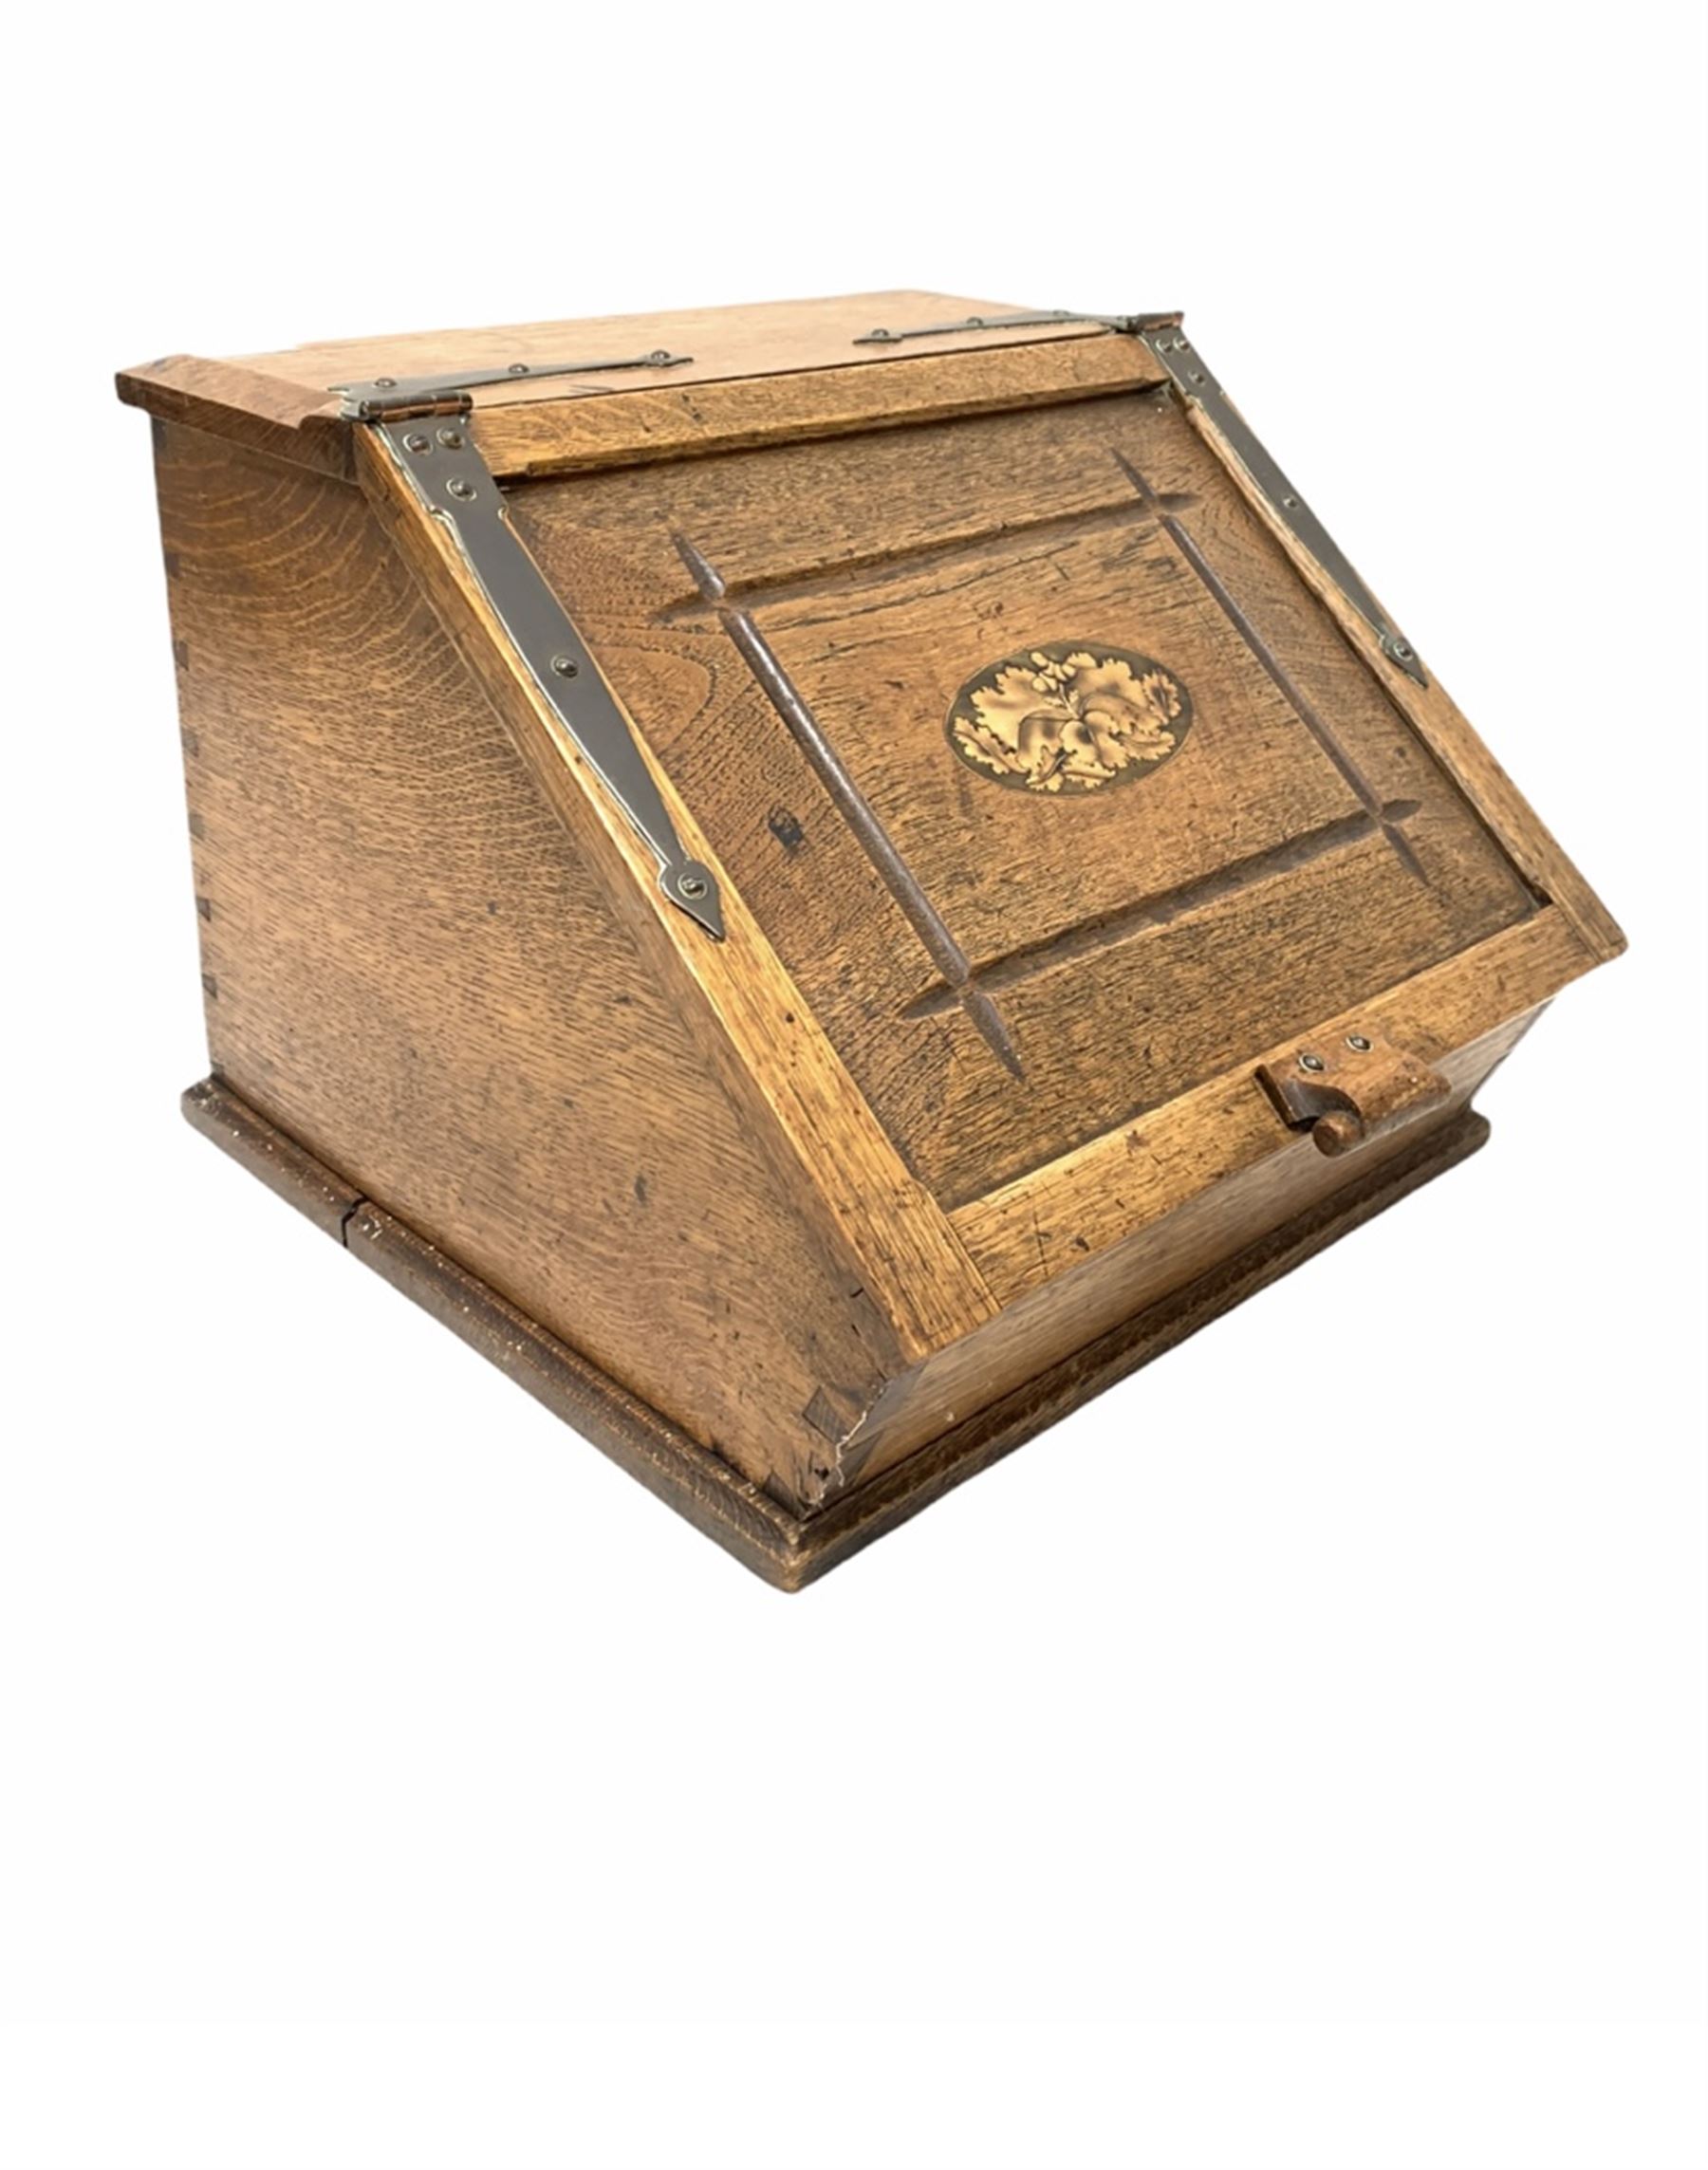 Late 19th century inlaid oak coal box